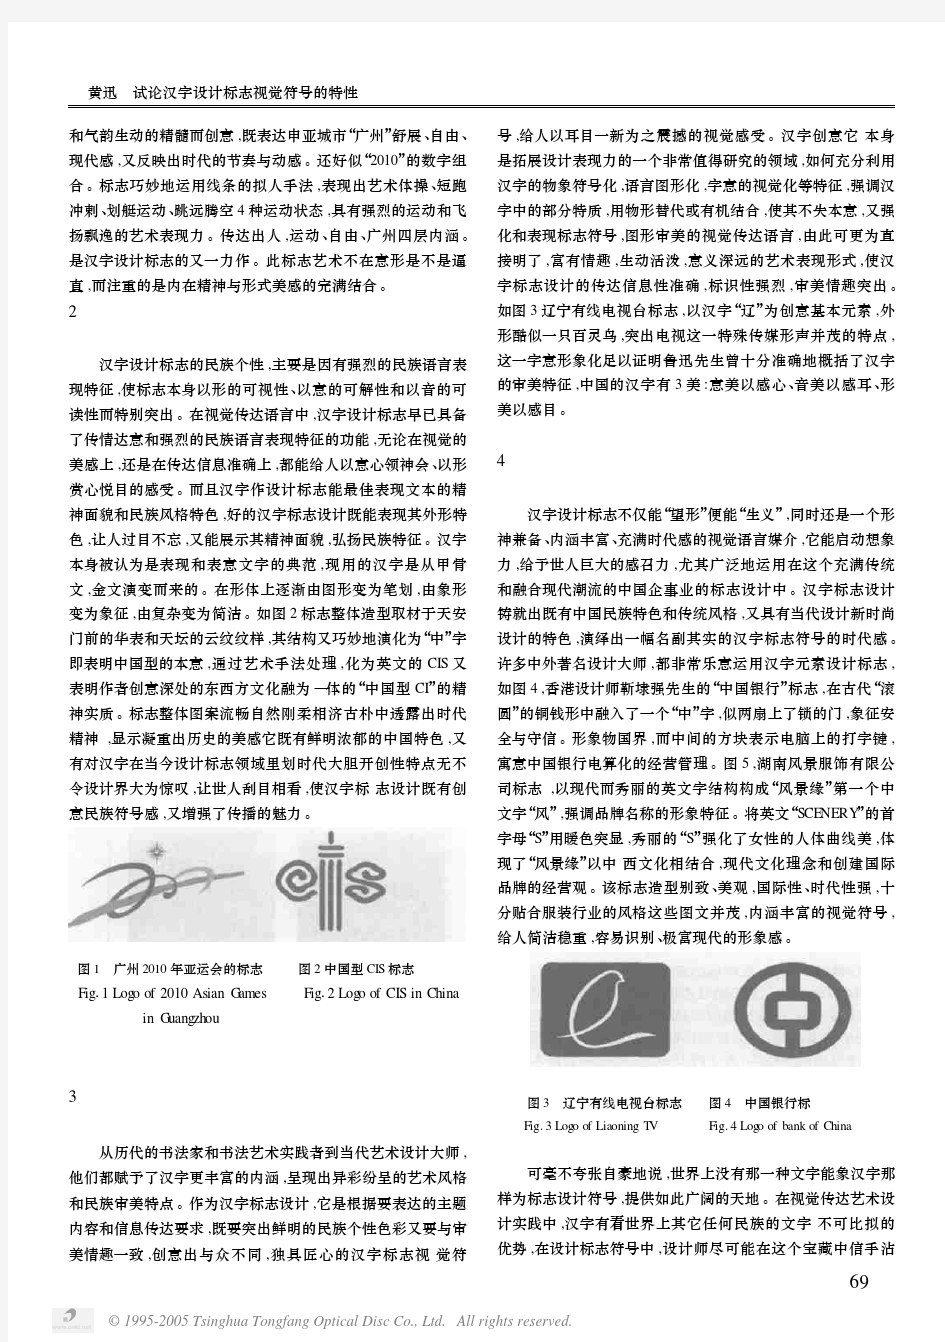 试论汉字设计标志视觉符号的特性 0404 中山大学吴柏林教授,广告心理学,清华大学出版社,绝密资料